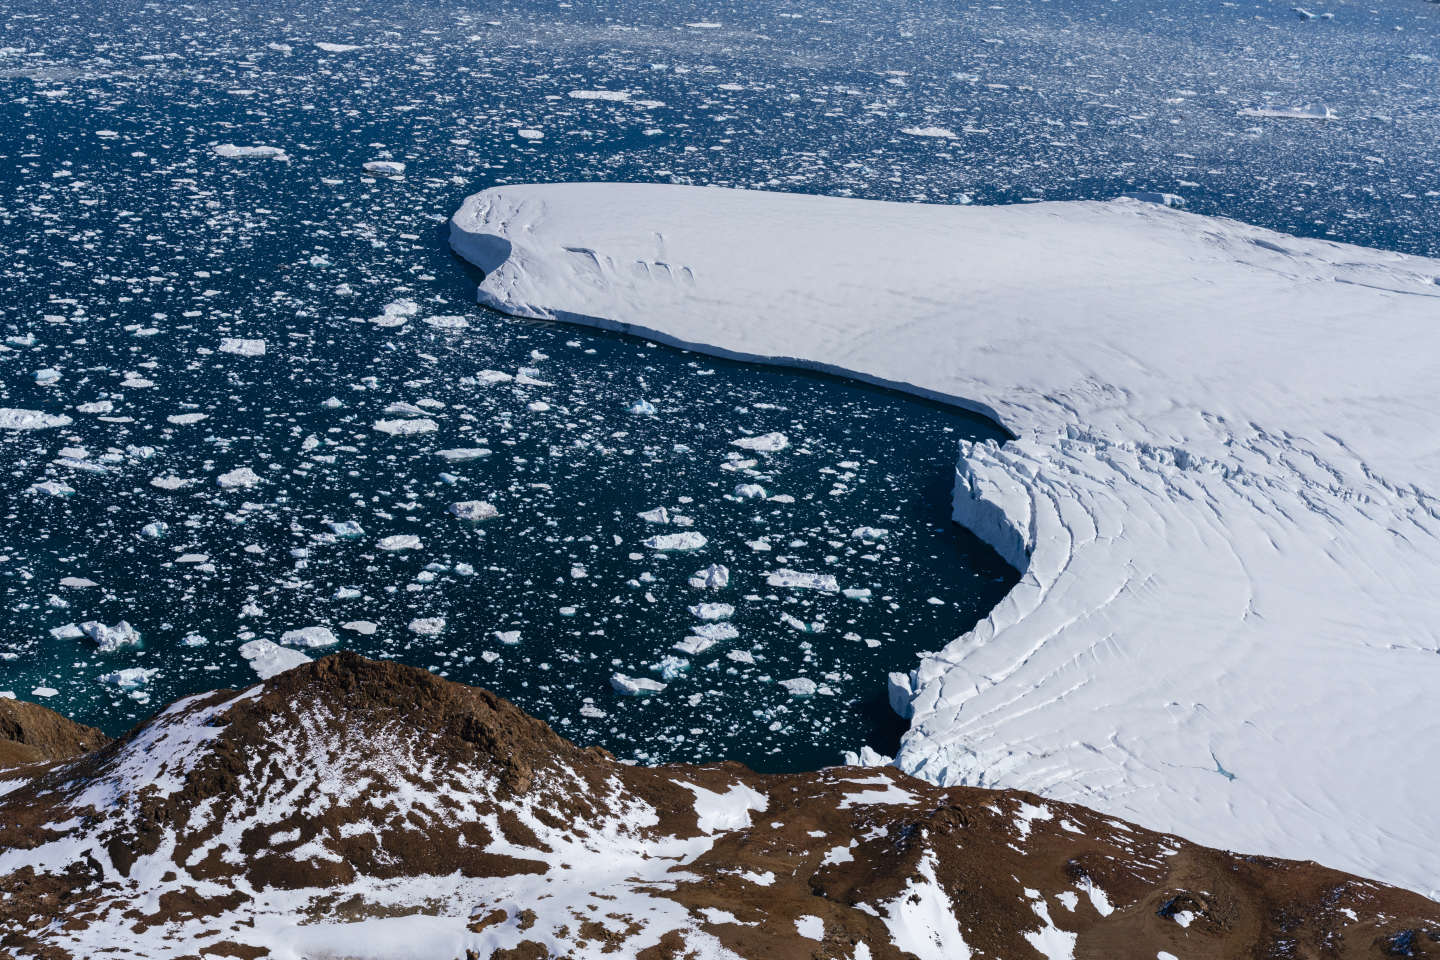 La banquise antarctique bat un record de fonte, exposant le continent blanc au réchauffement